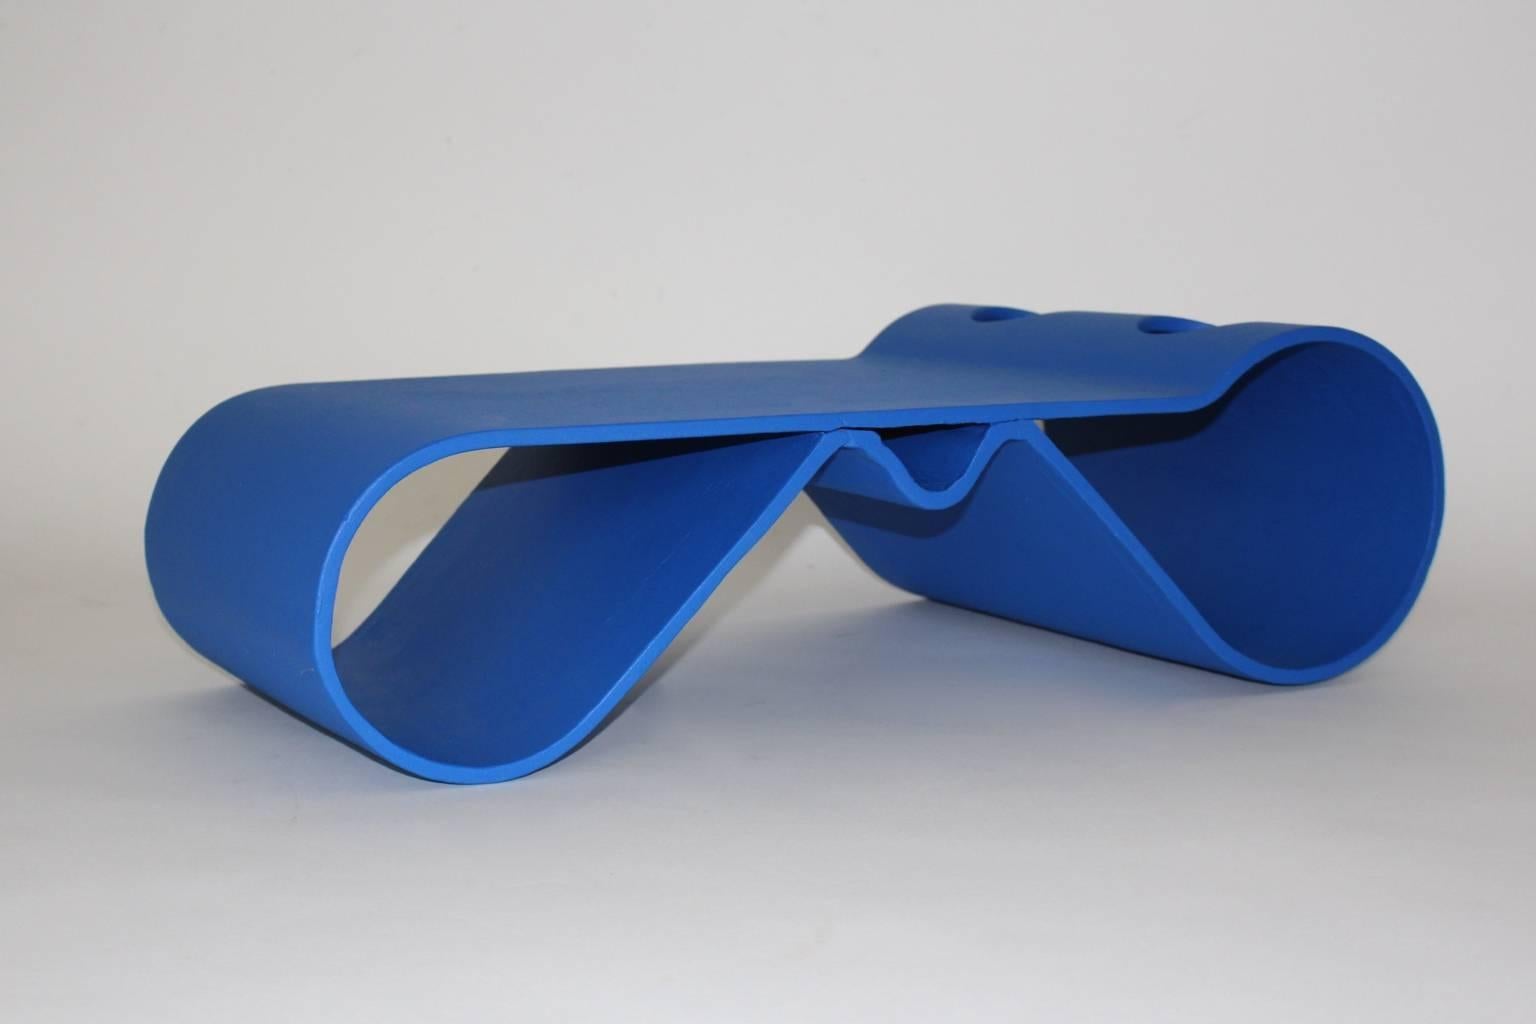 Blauer moderner Vintage Loop Couchtisch von Willy Guhl (1915-2004).
Dieser Couchtisch eignet sich sehr gut für den Innen- und Außenbereich als futuristisch schöner Couchtisch oder Sofatisch.
Der futuristische Couchtisch ist aus kräftig blau